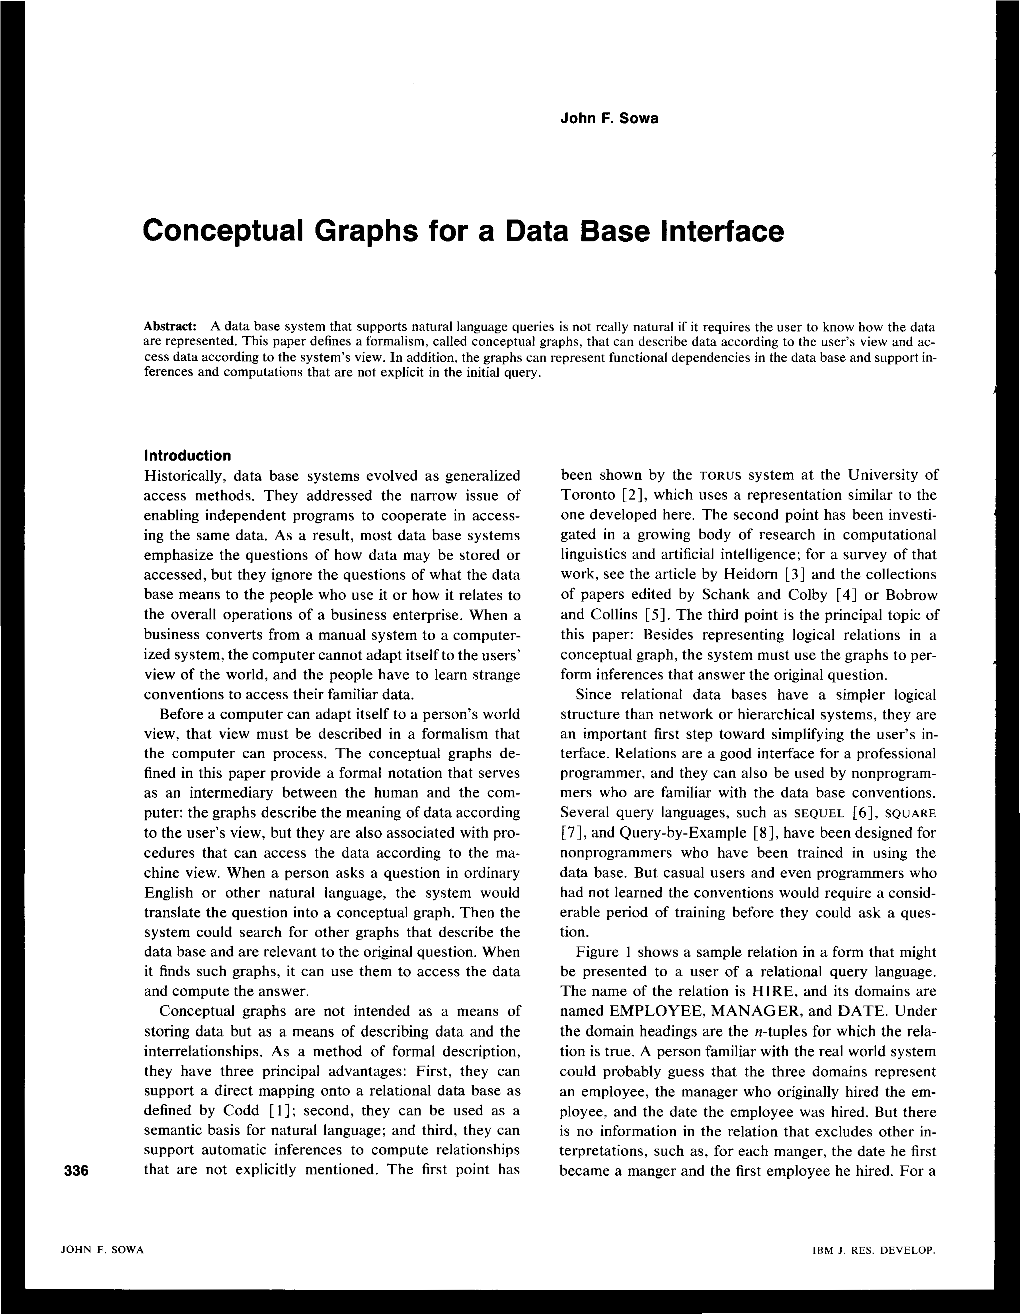 Conceptual Graphs for a Data Base Interface